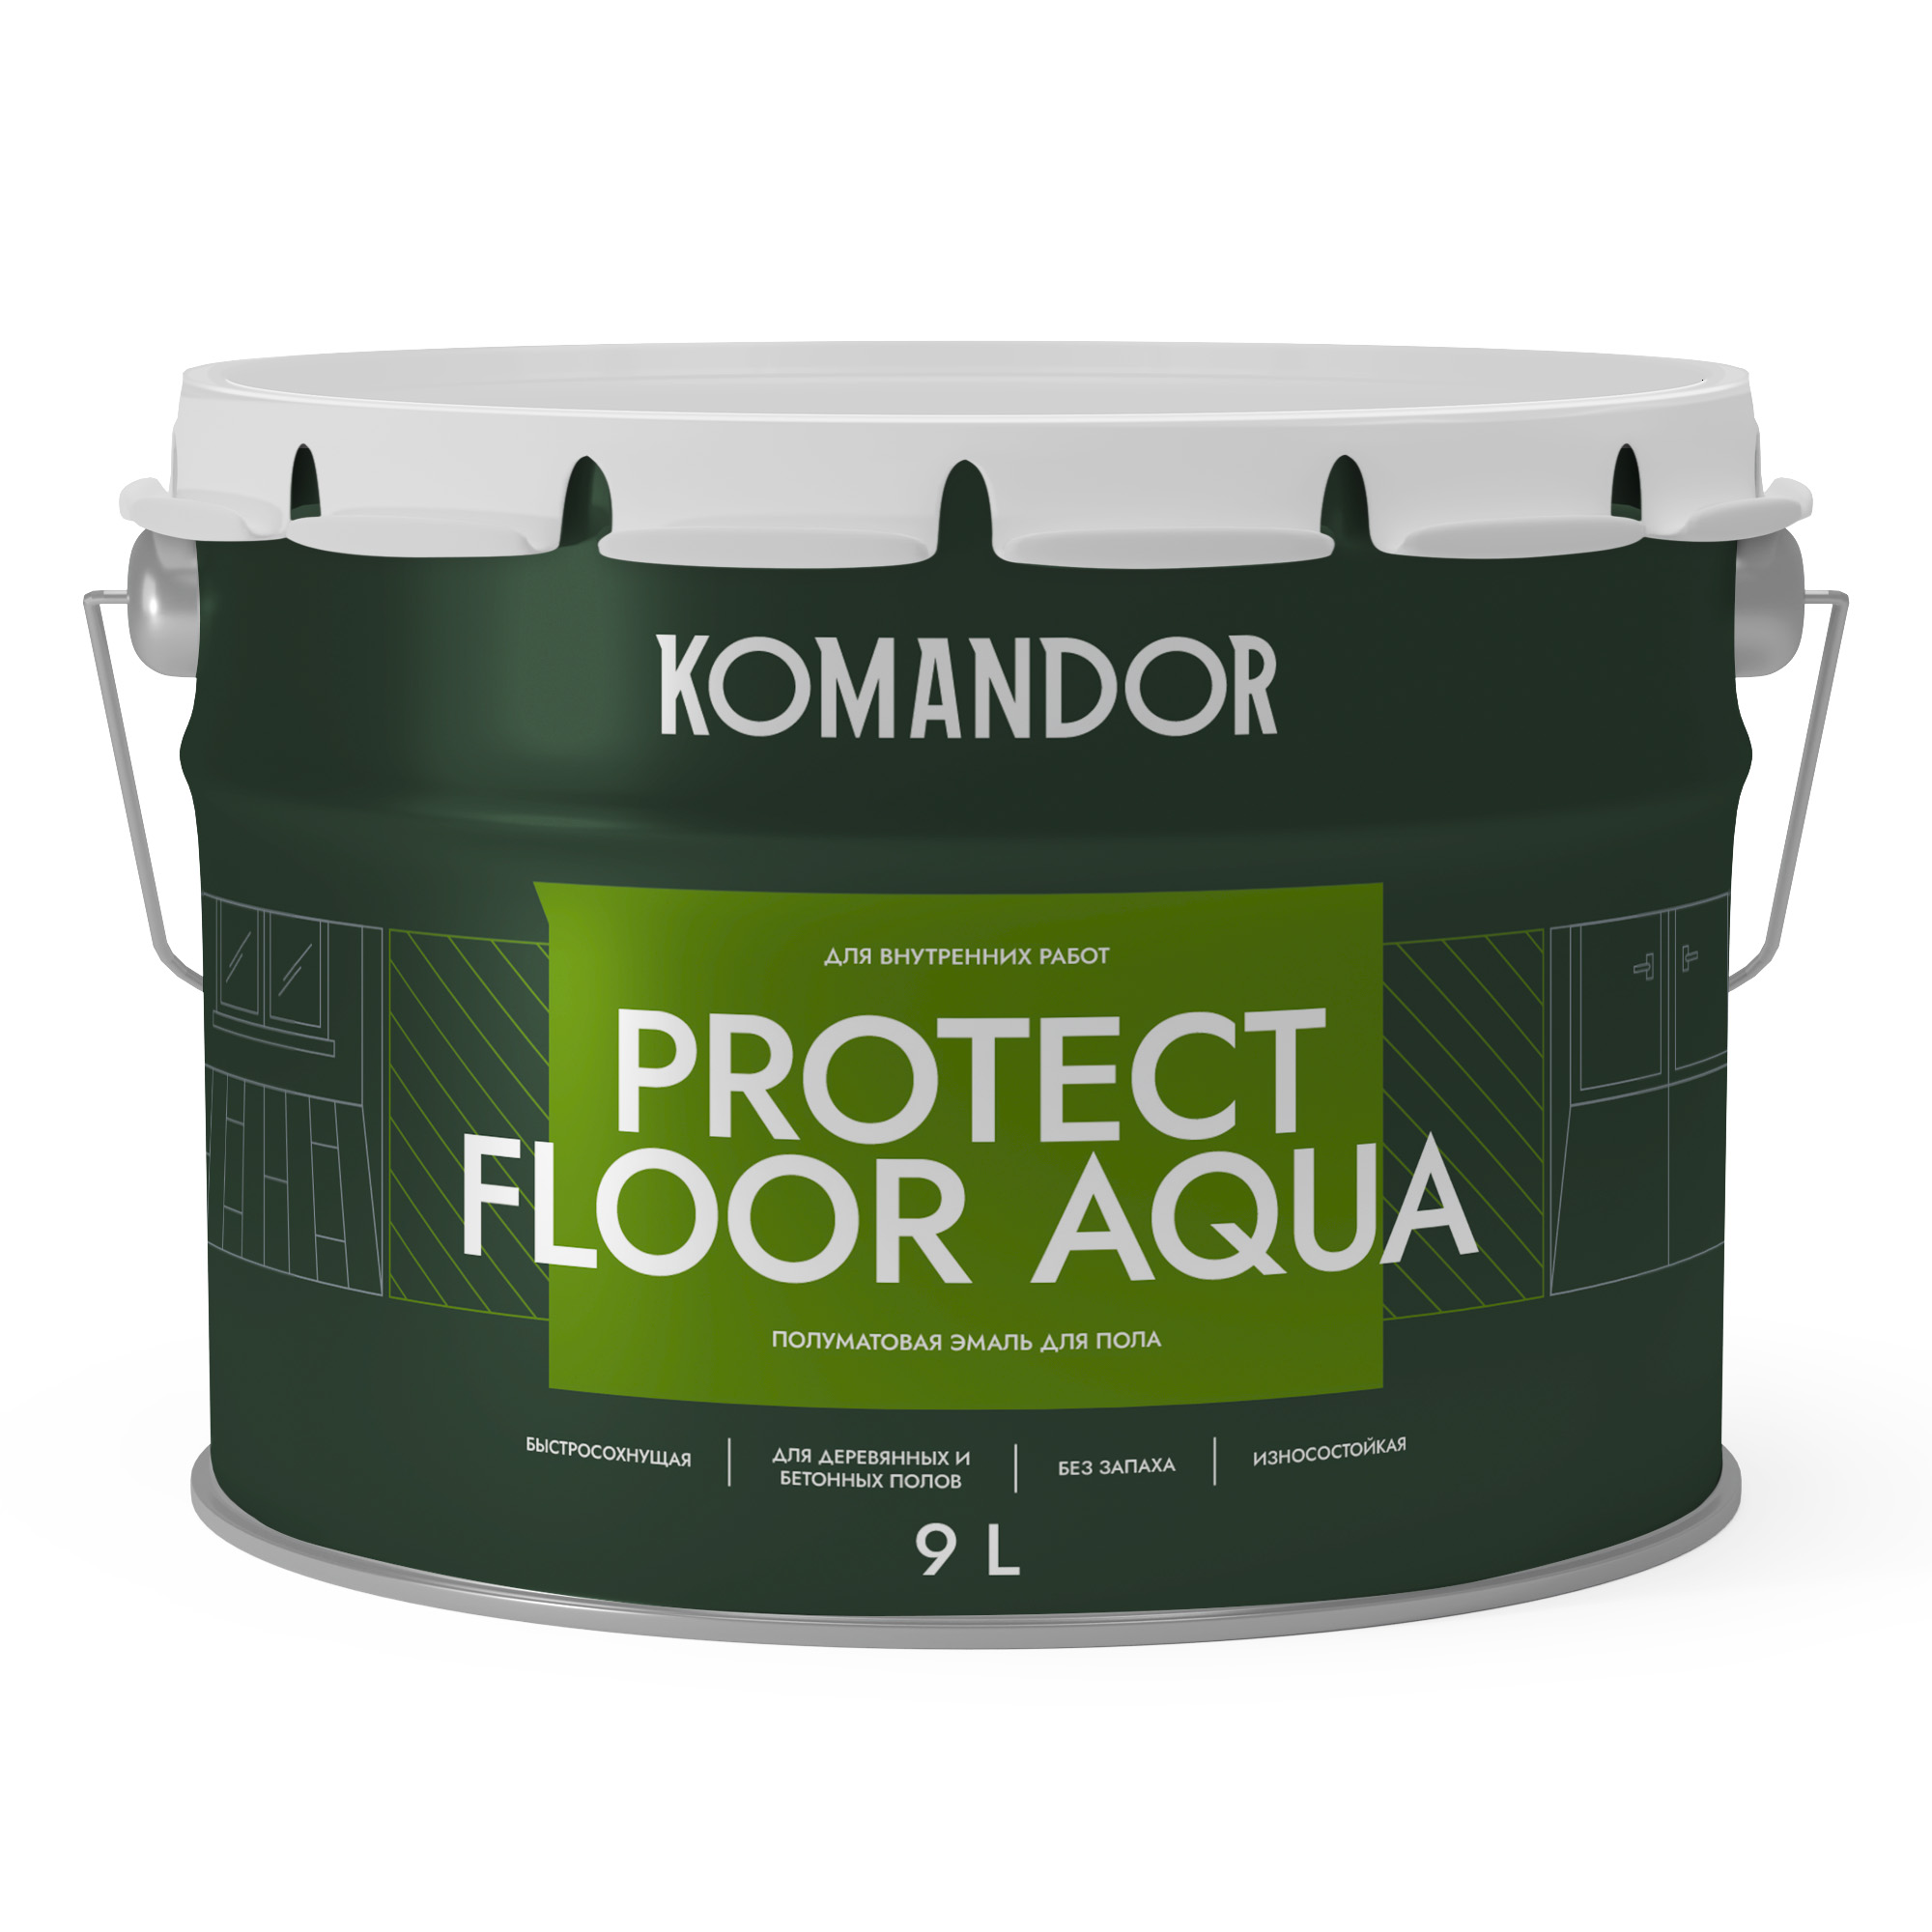 Эмаль для пола и лестниц Komandor Protect Floor Aqua C S1314003010 полуматовая 9 л - фото 1